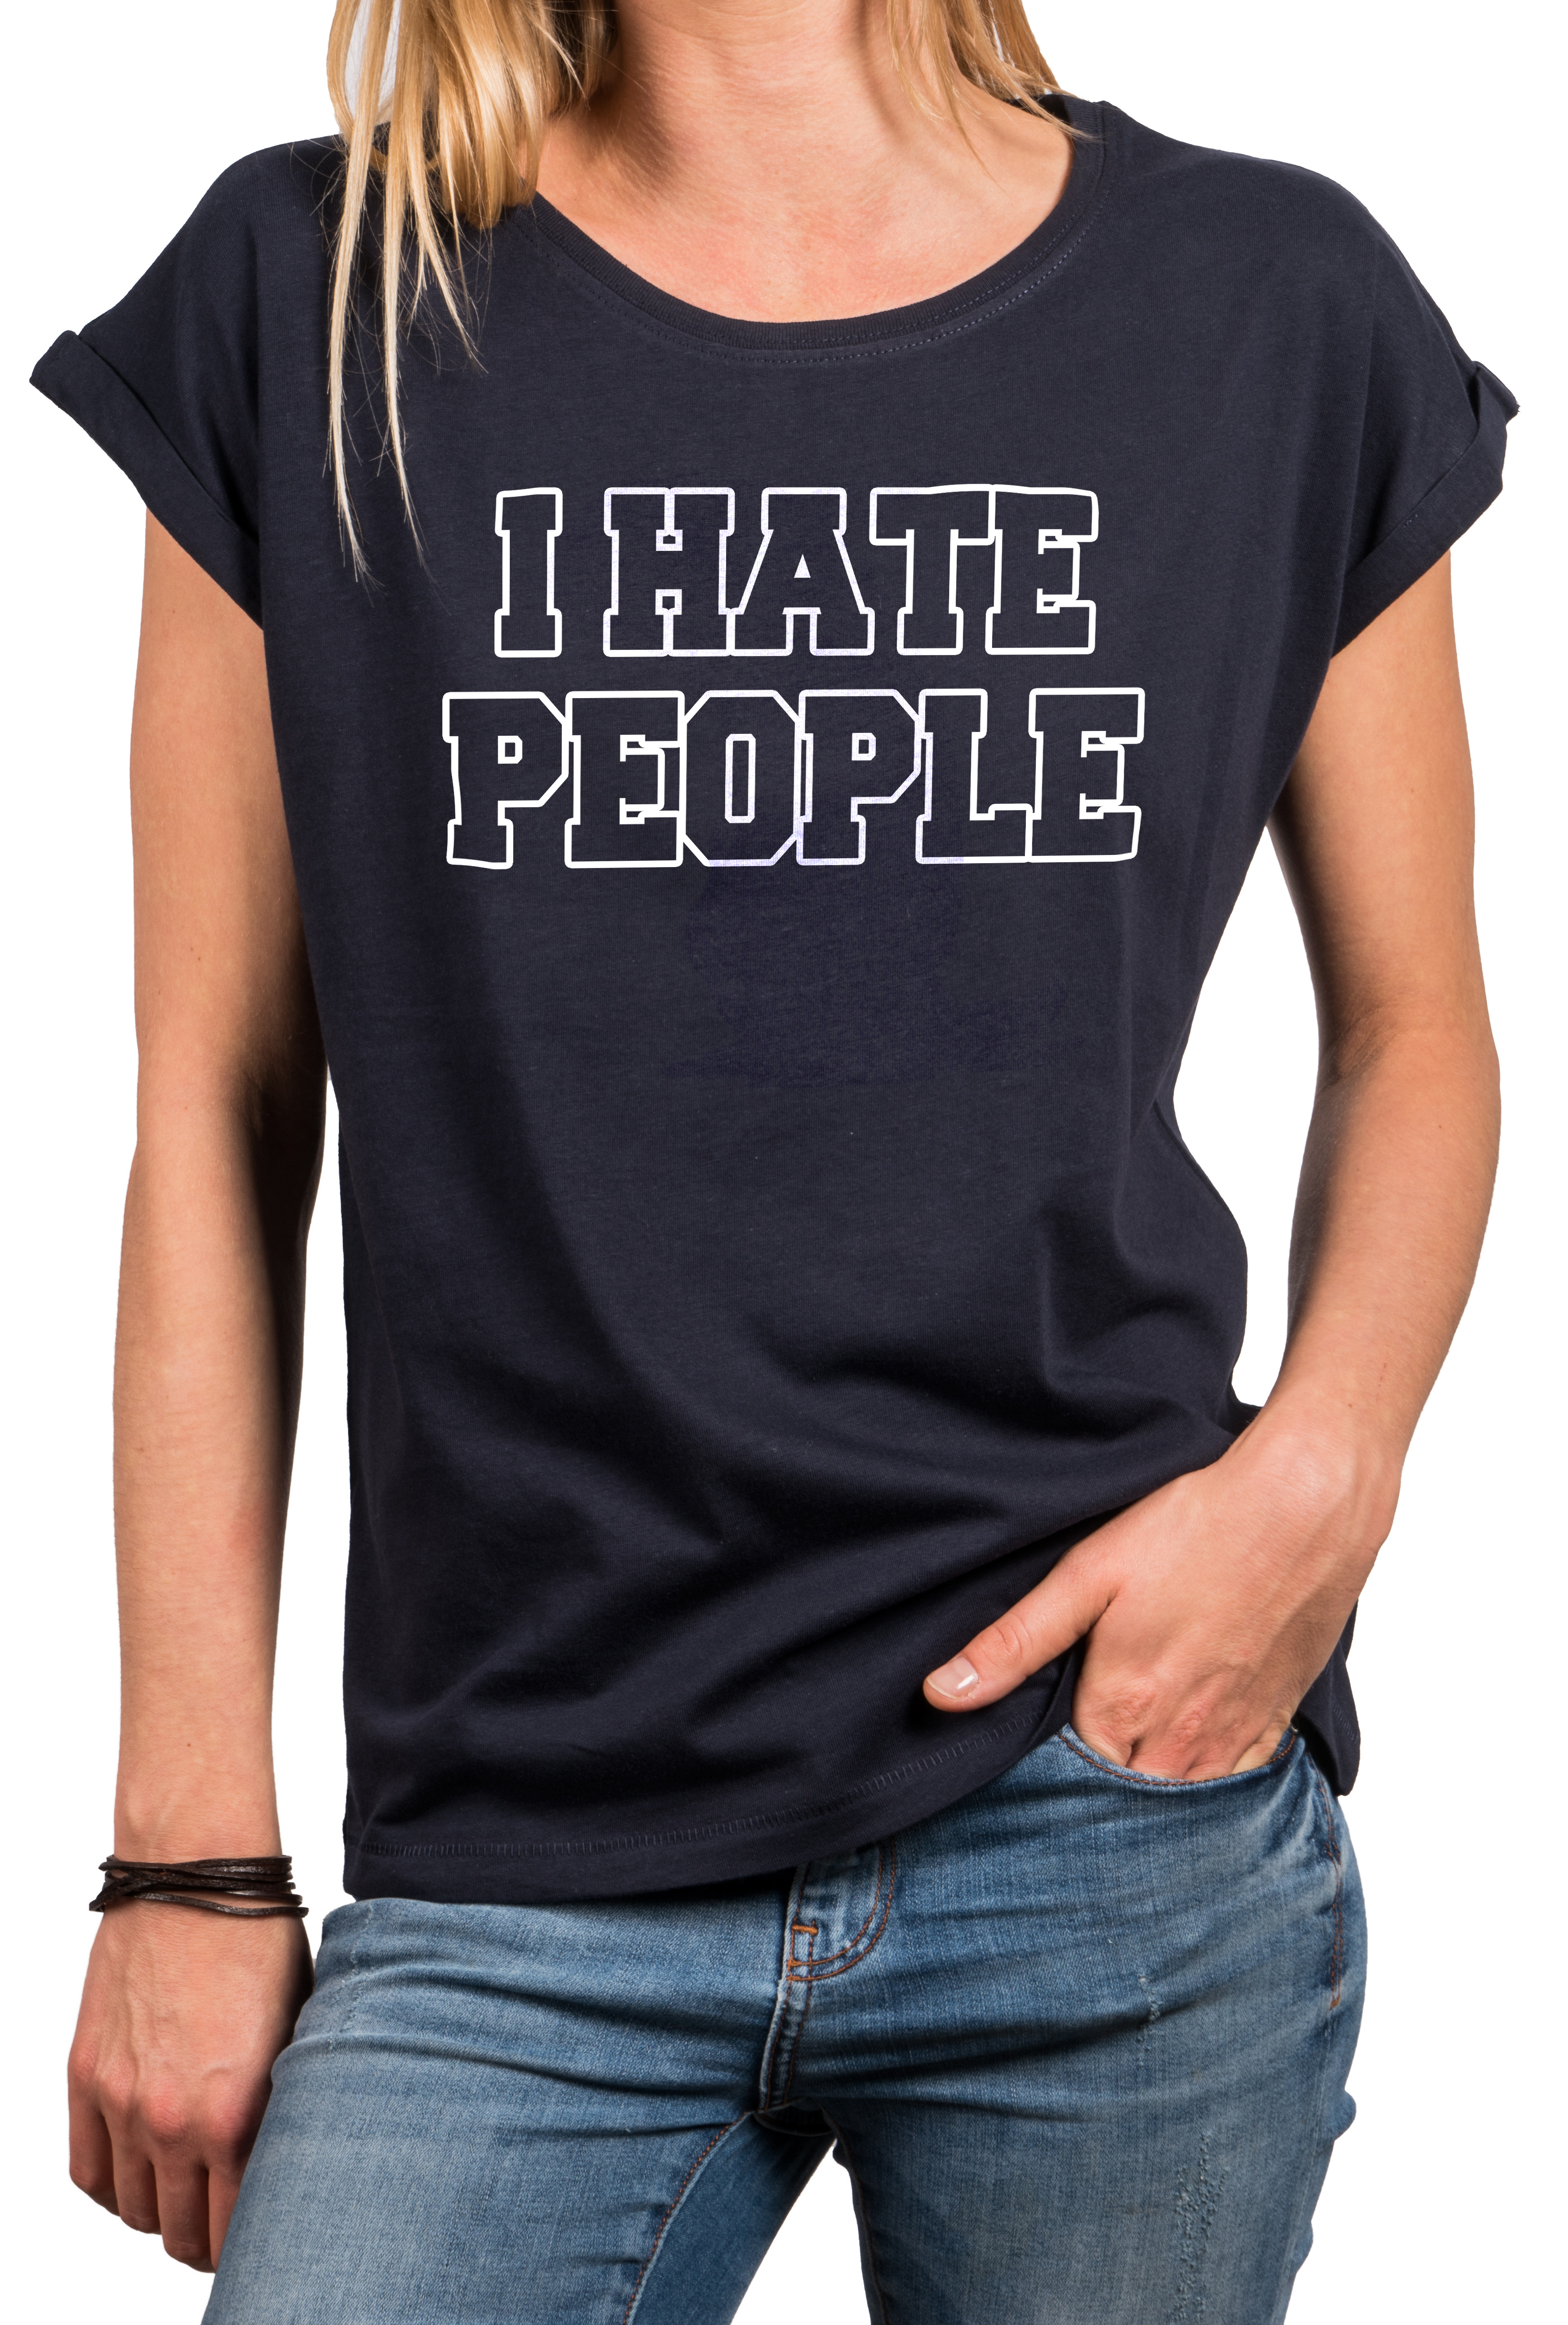 Sprüche Shirt Frauen - I Hate People